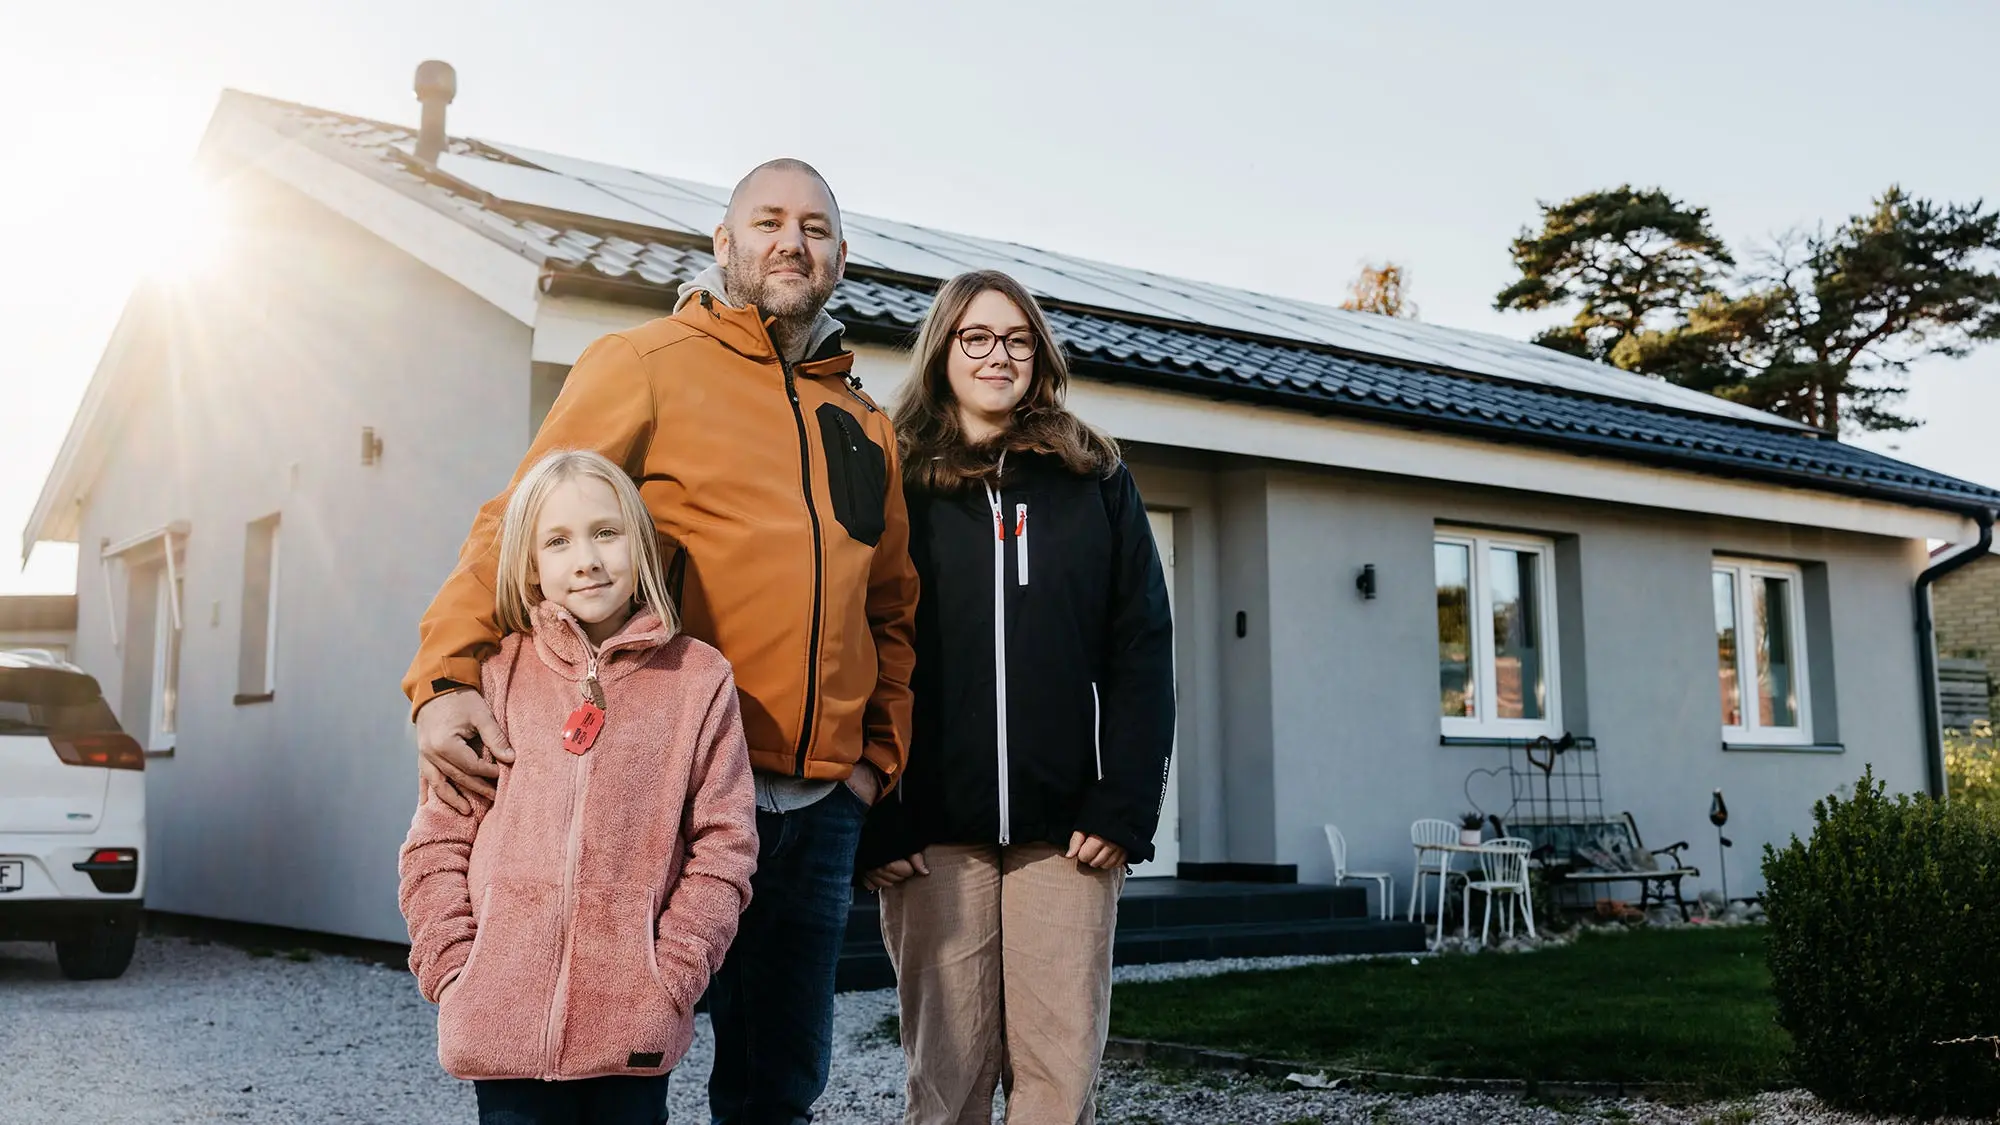 Familjen Bengtsson leasar sina solceller: ”Trygghet och service övervägde”